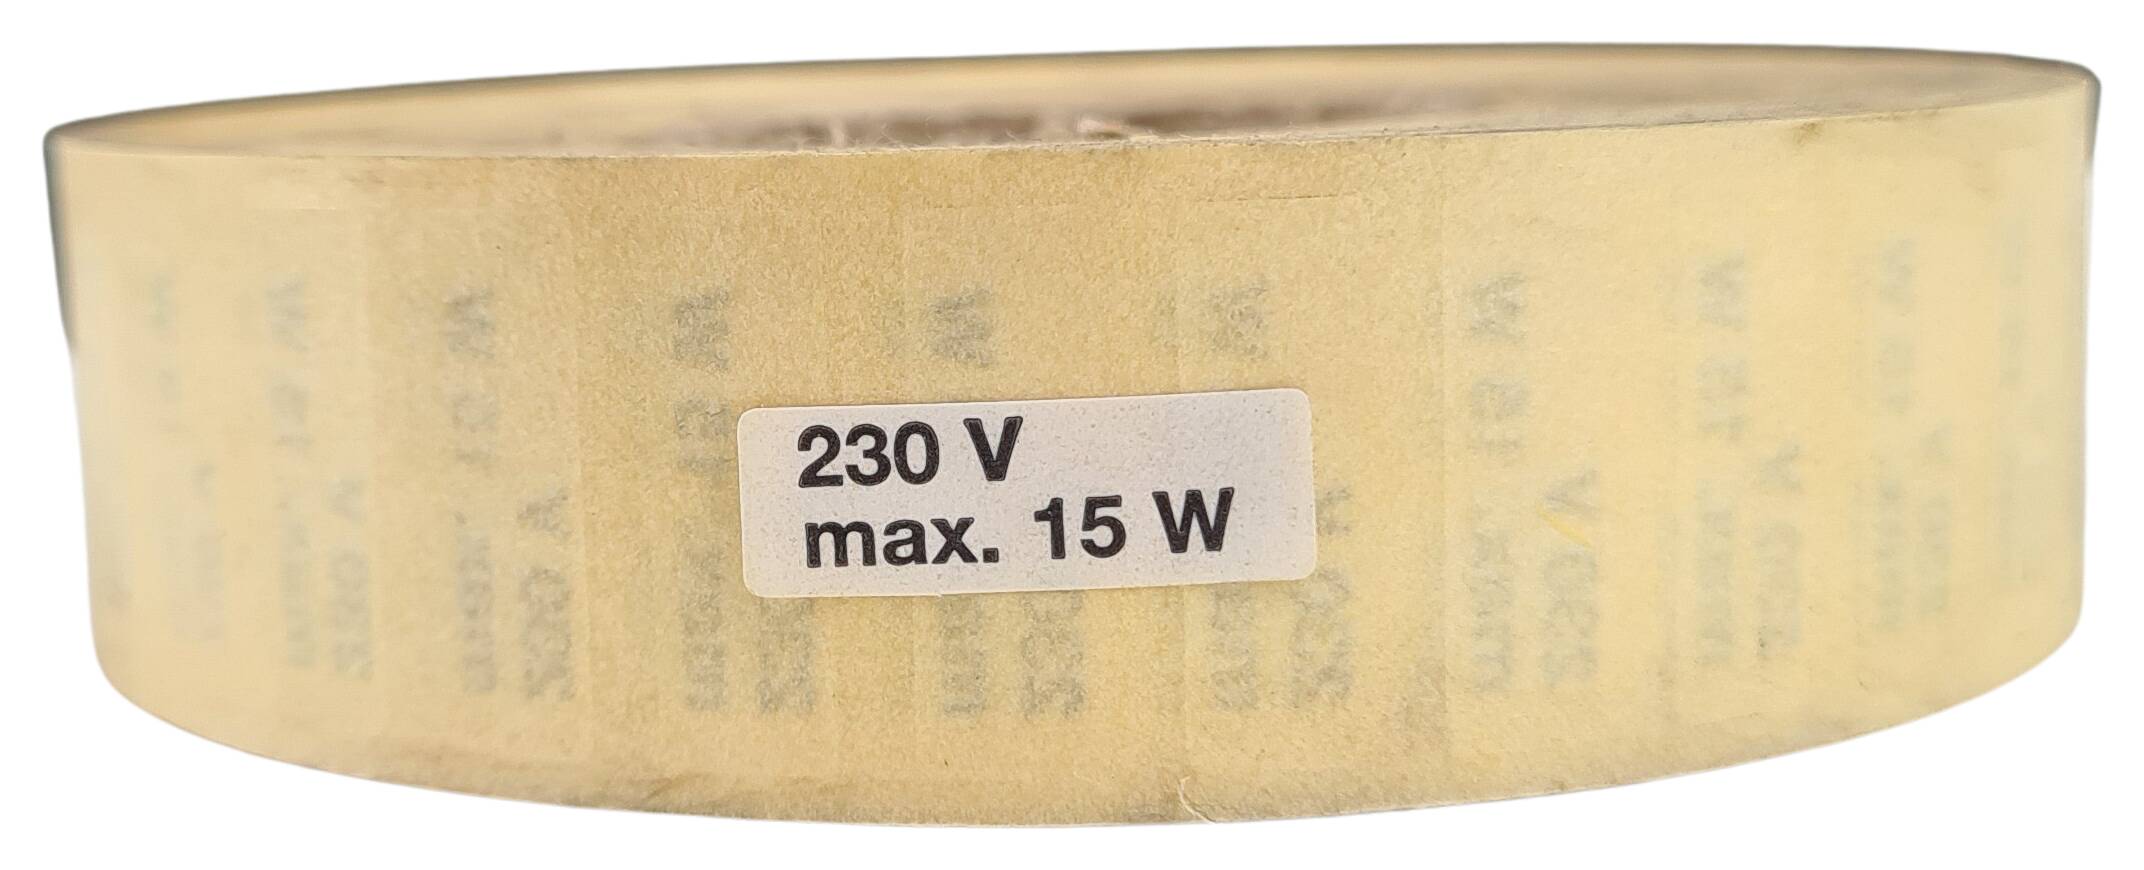 Etikett 230V max. 15W 21x7 mm schreibweiss